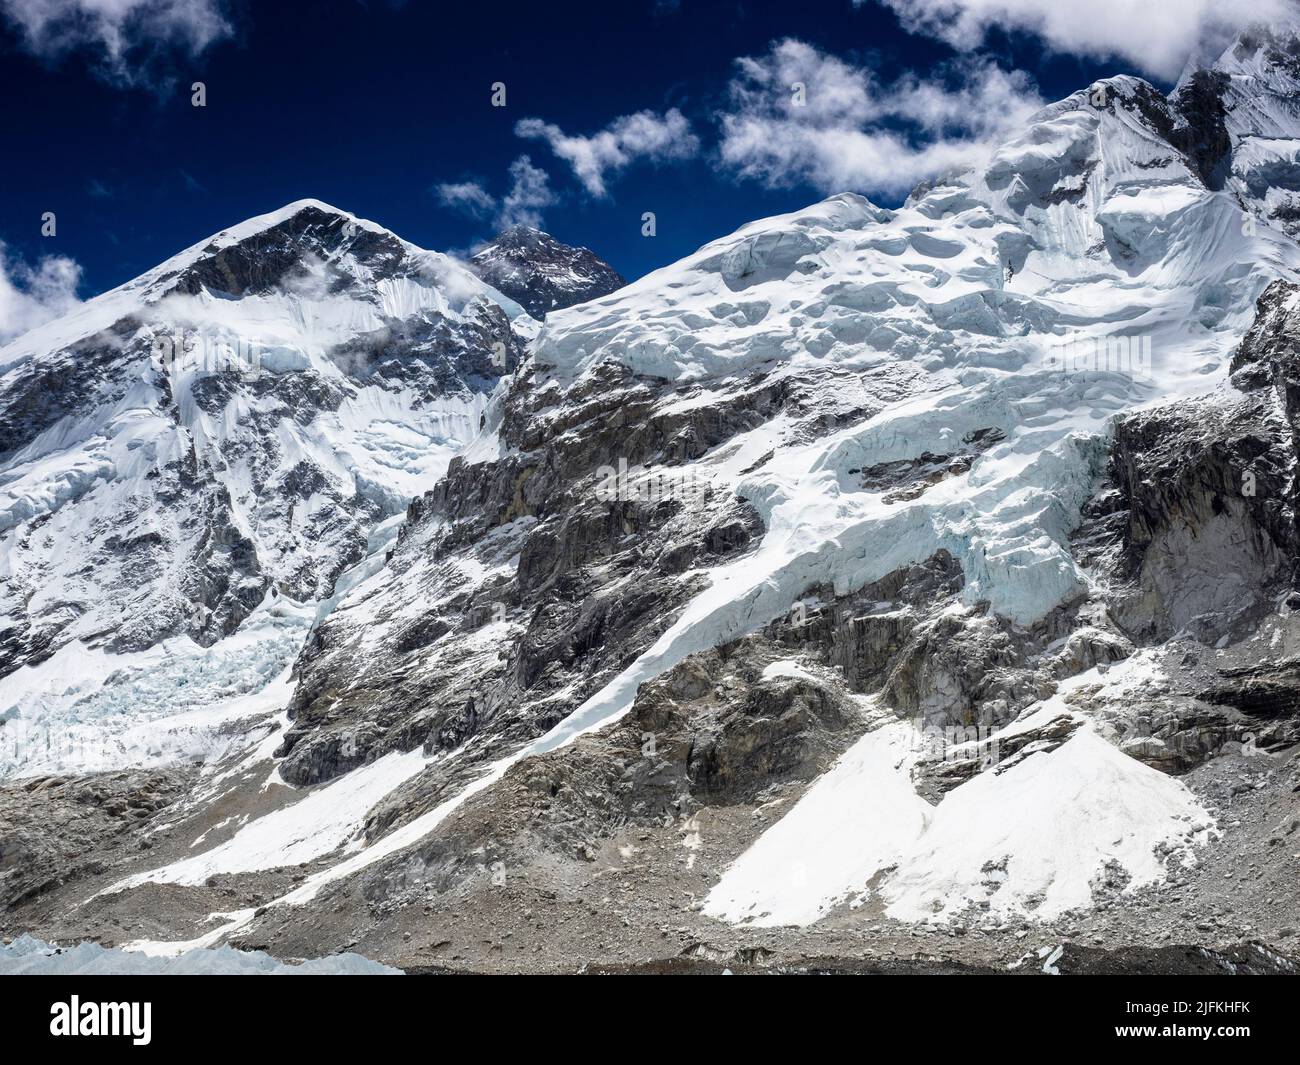 Die schwarze Gipfelpyramide des Mount Everest (8849m) hinter der West Shoulder und Nuptse über dem Khumbu-Gletscher Stockfoto